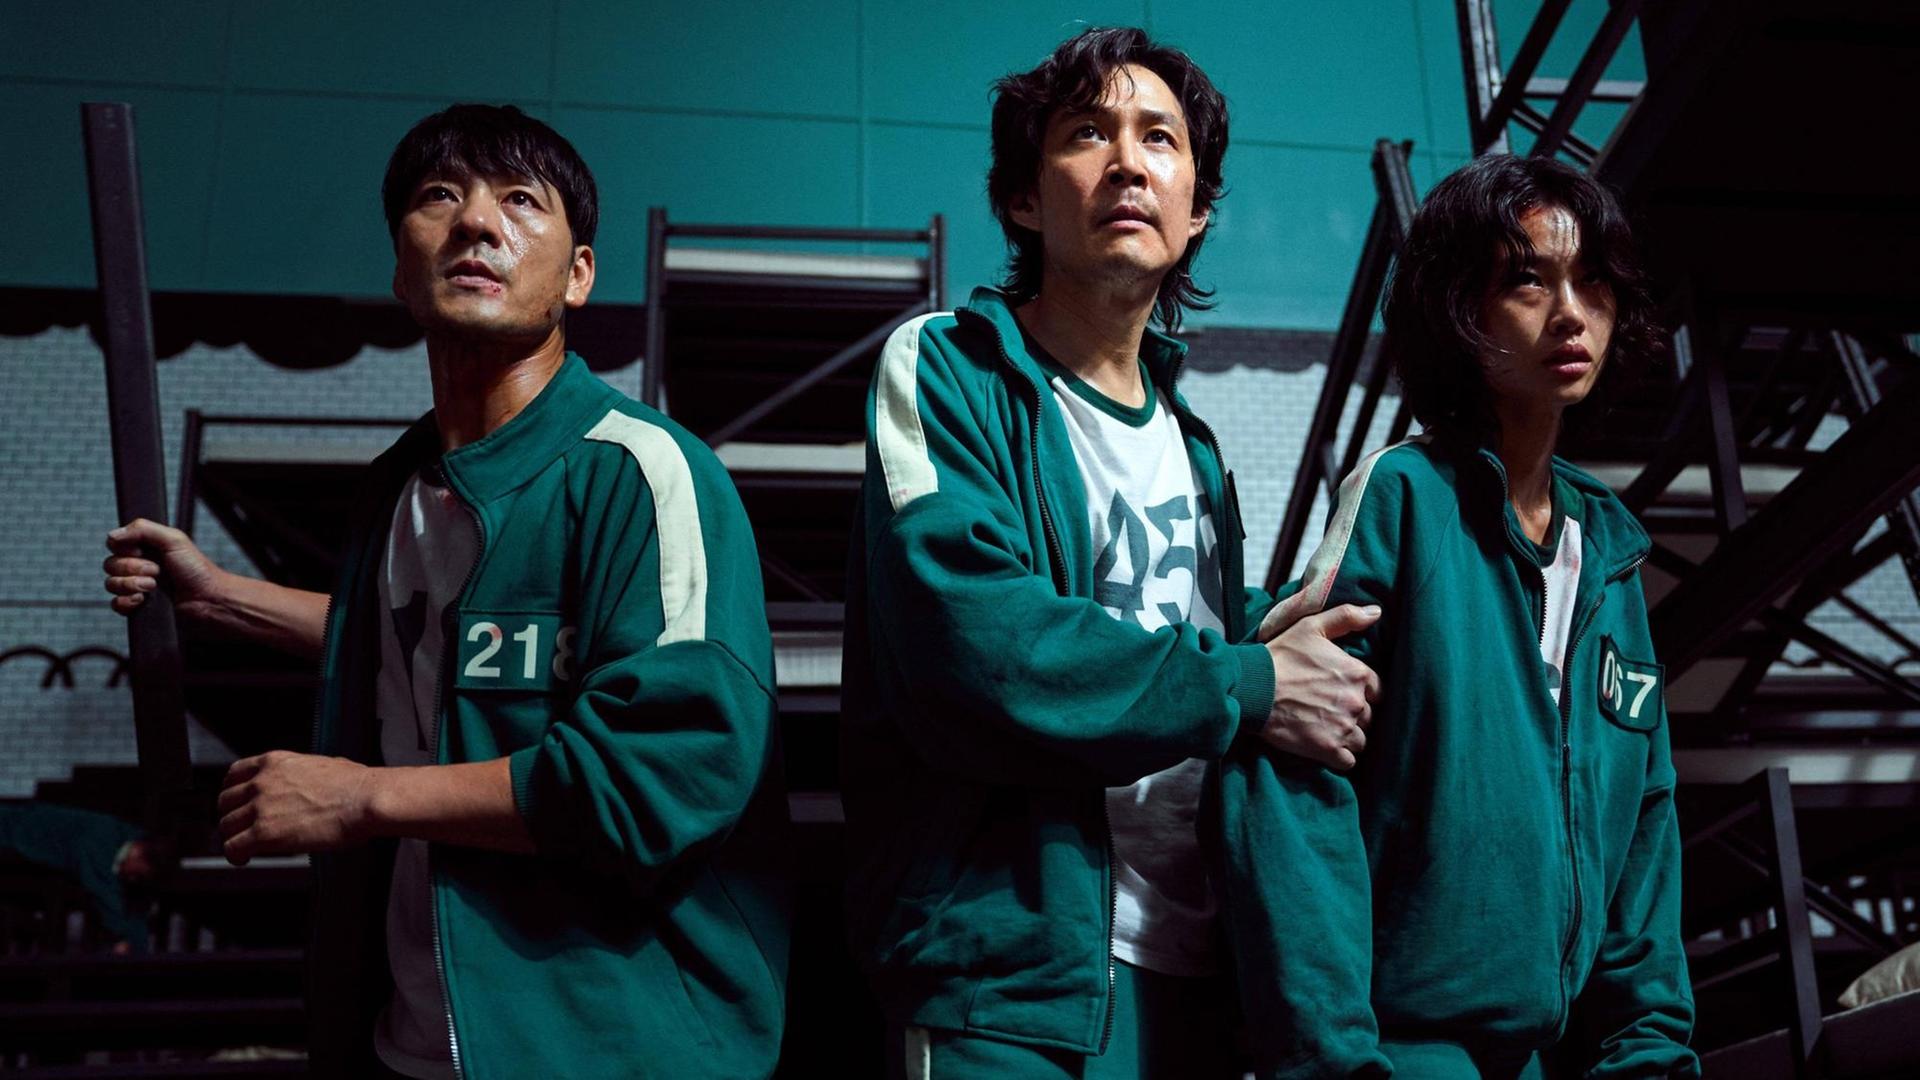 Szene aus dem Überlebenskampfspiel "Squid Game" mit: Lee Jung-jae, Greg Chun, Stephen Fu. Netflix Serie aus Südkorea, 2021.